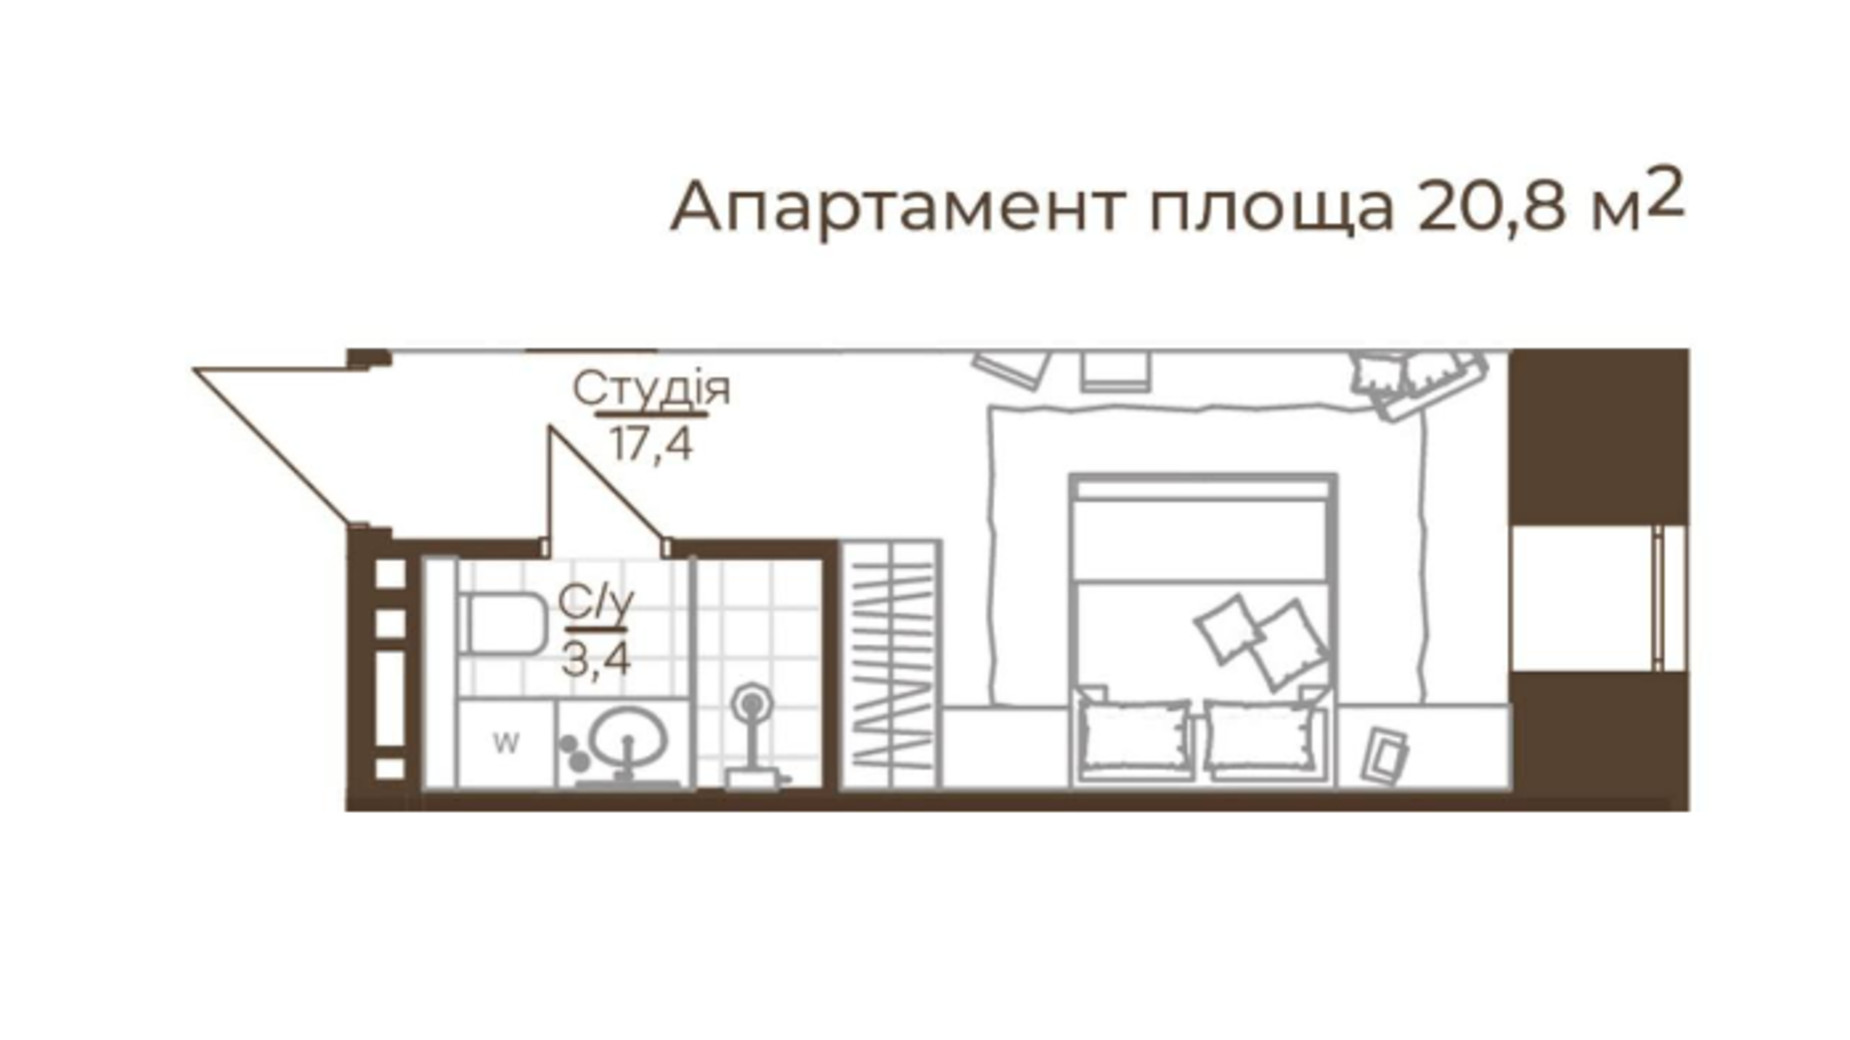 Планировка апартаментов в Апарт-готель Ahni moon resort 20.8 м², фото 649548